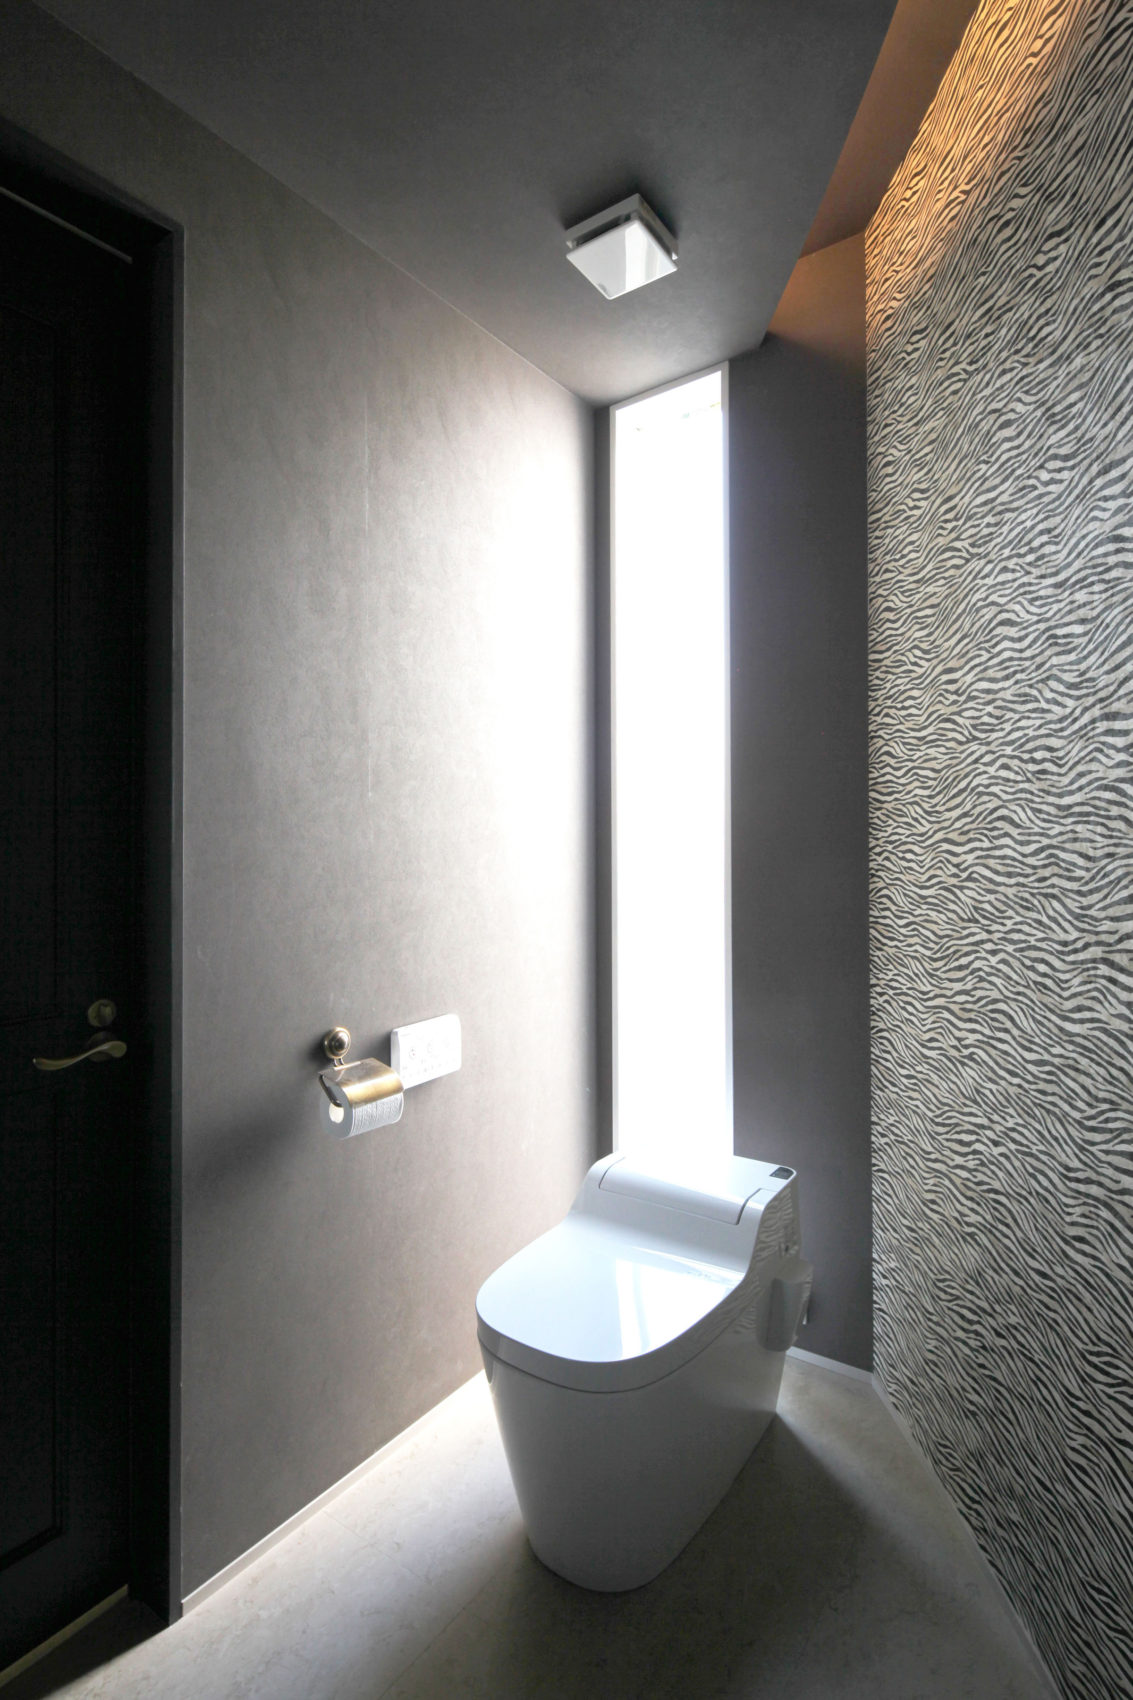 壁紙が印象的なトイレとスリット窓